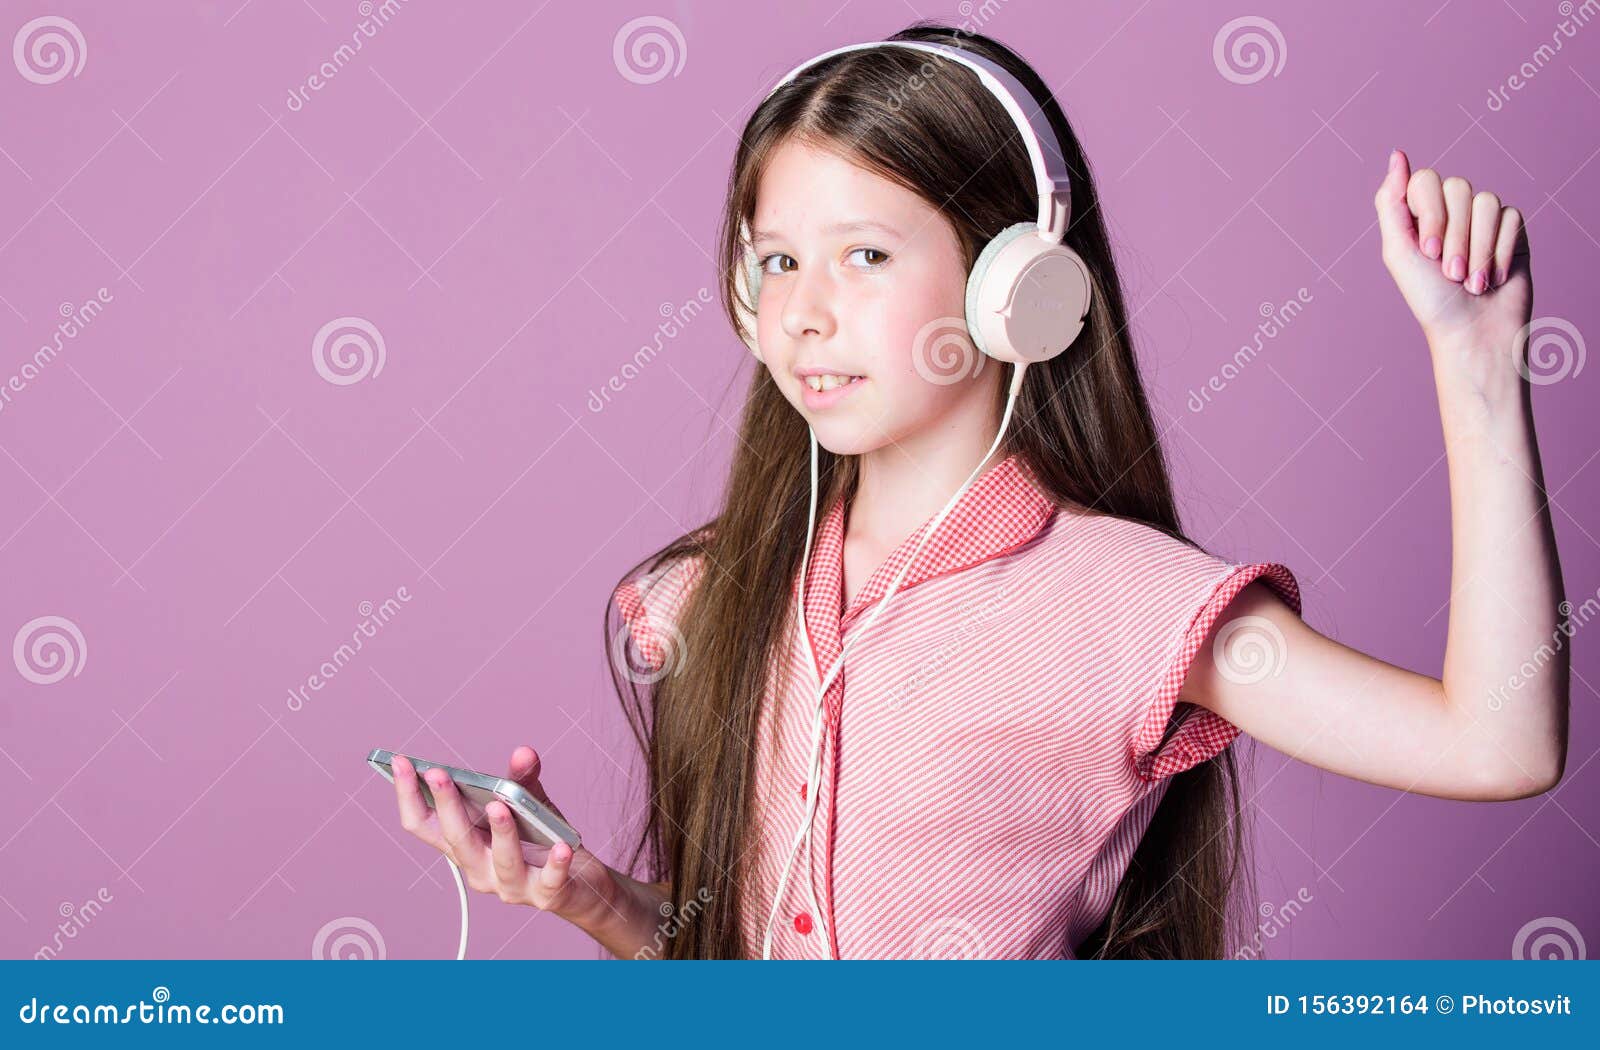 Аудио уроки 7 класс. Звонок на урок аудио. Описание картины девочка слушает музыку английский язык.